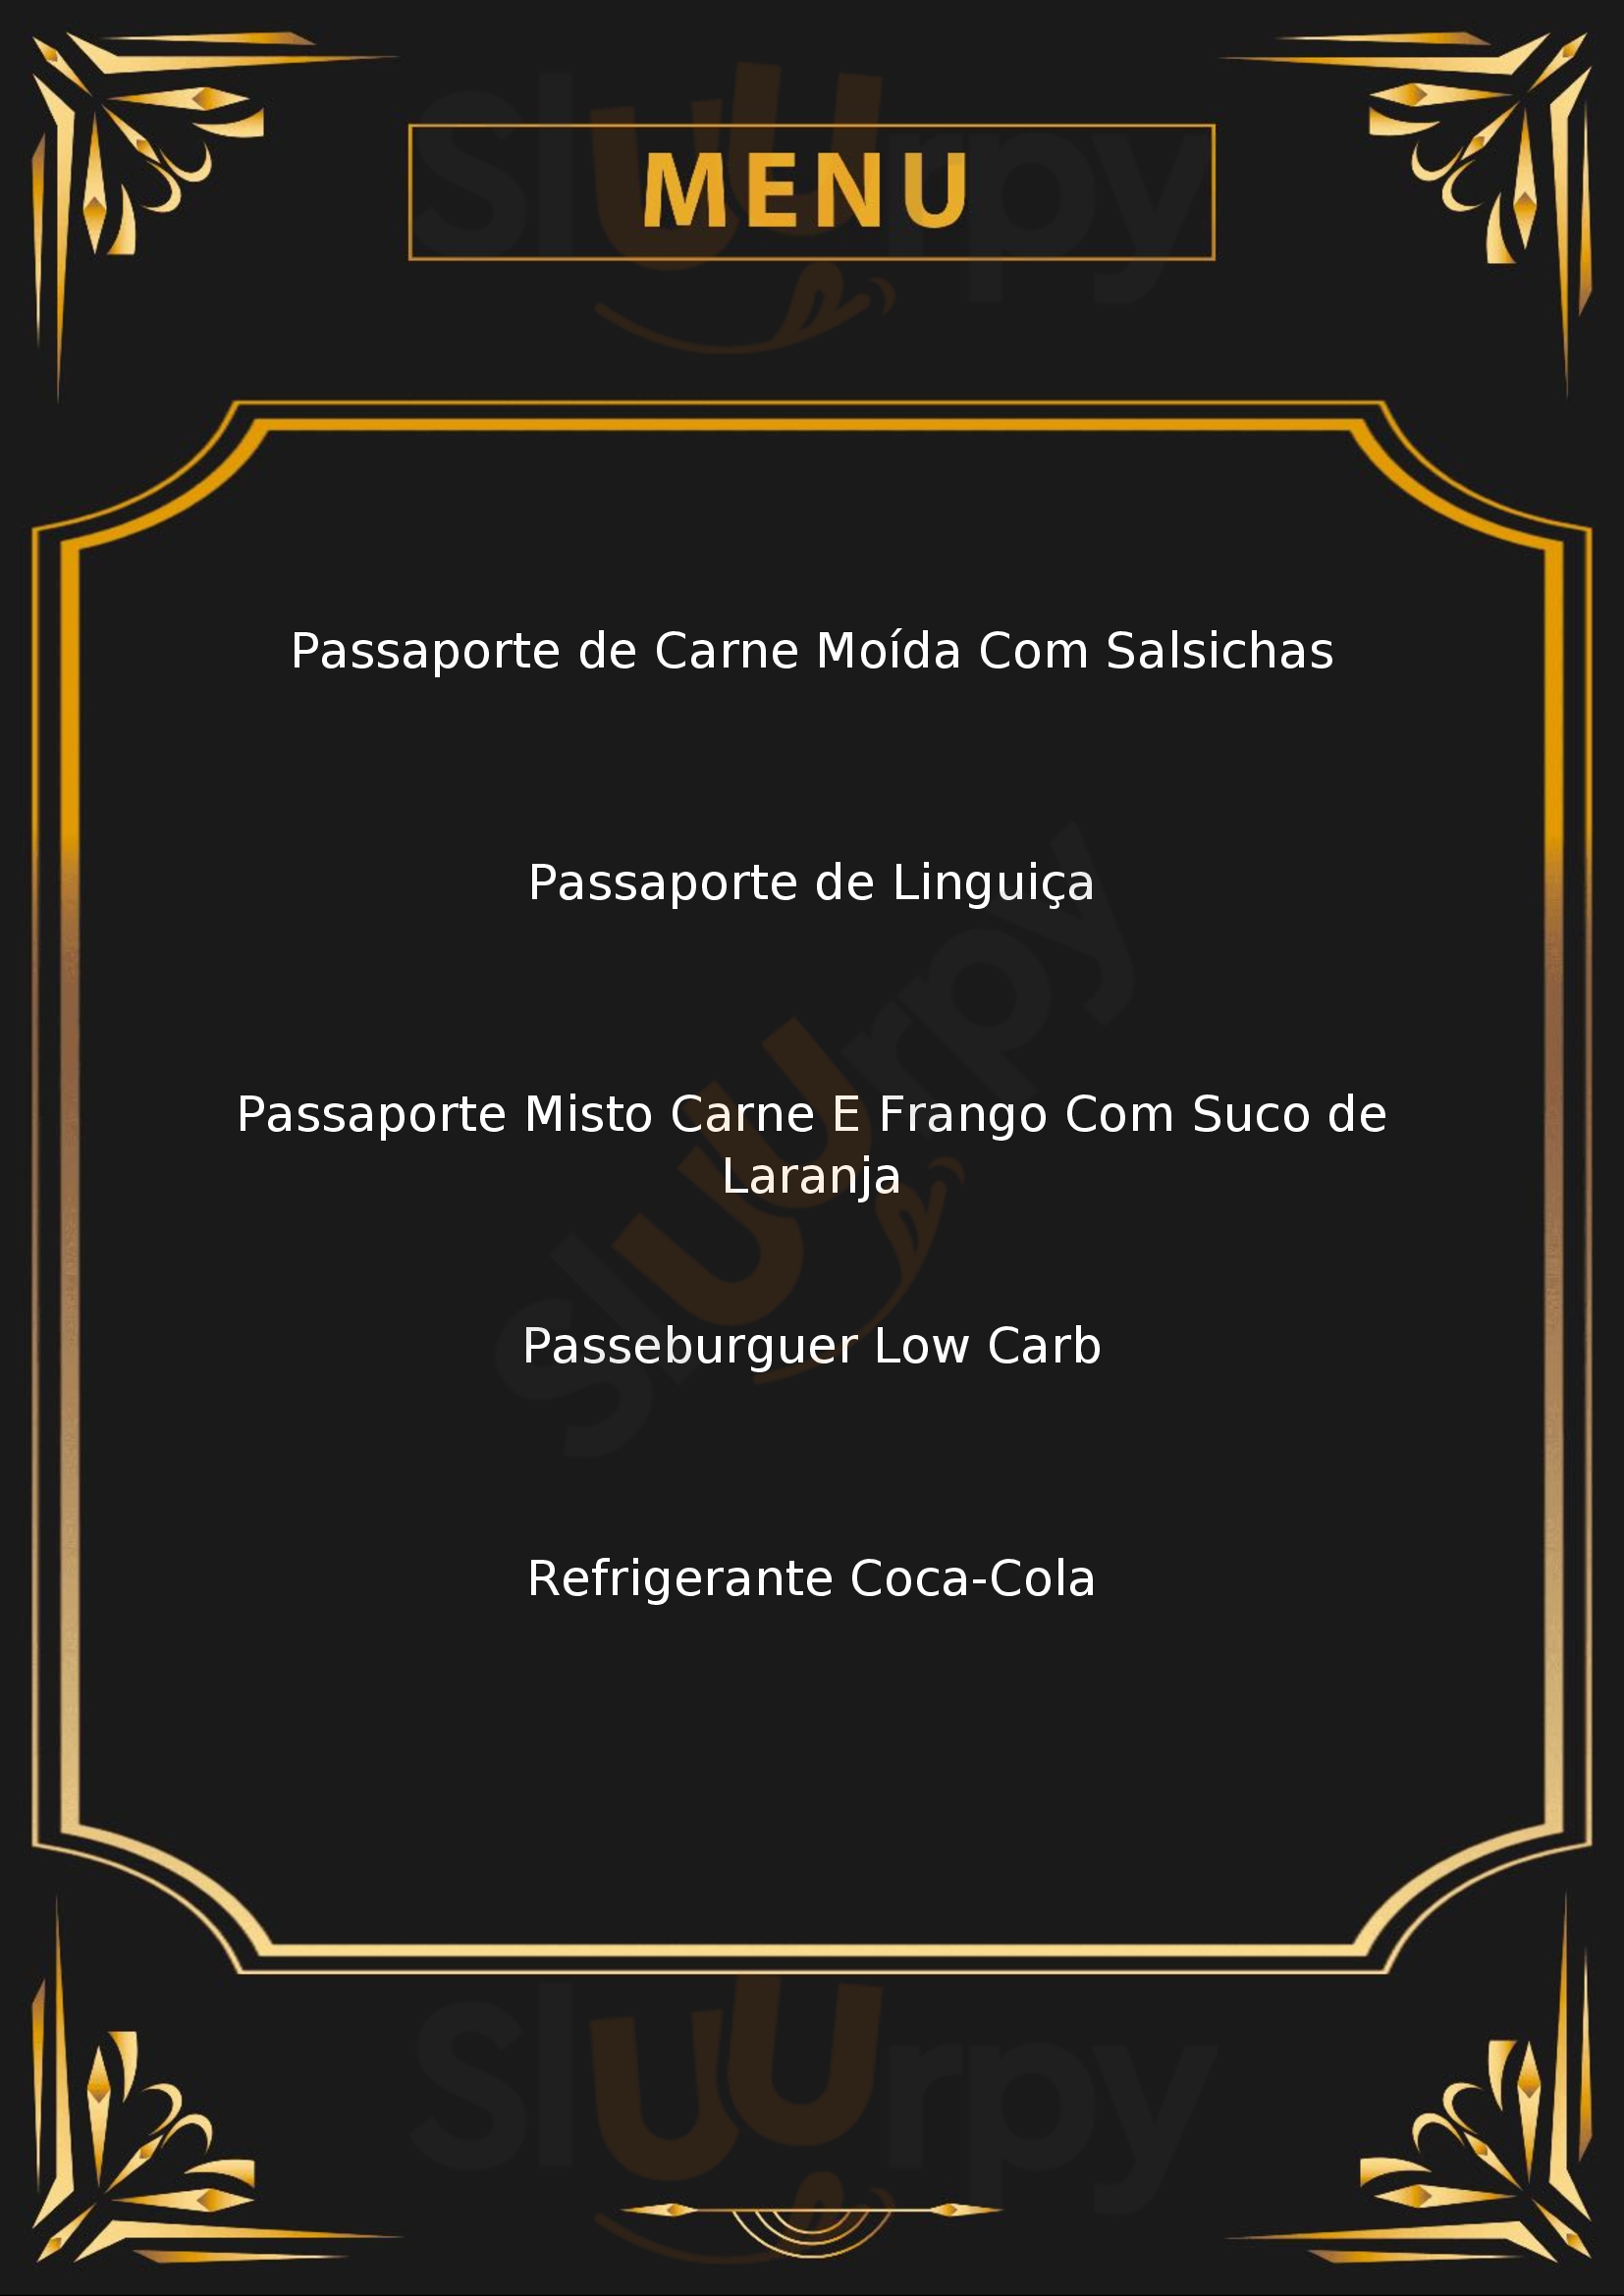 Passaporte Centenário Maceió Menu - 1